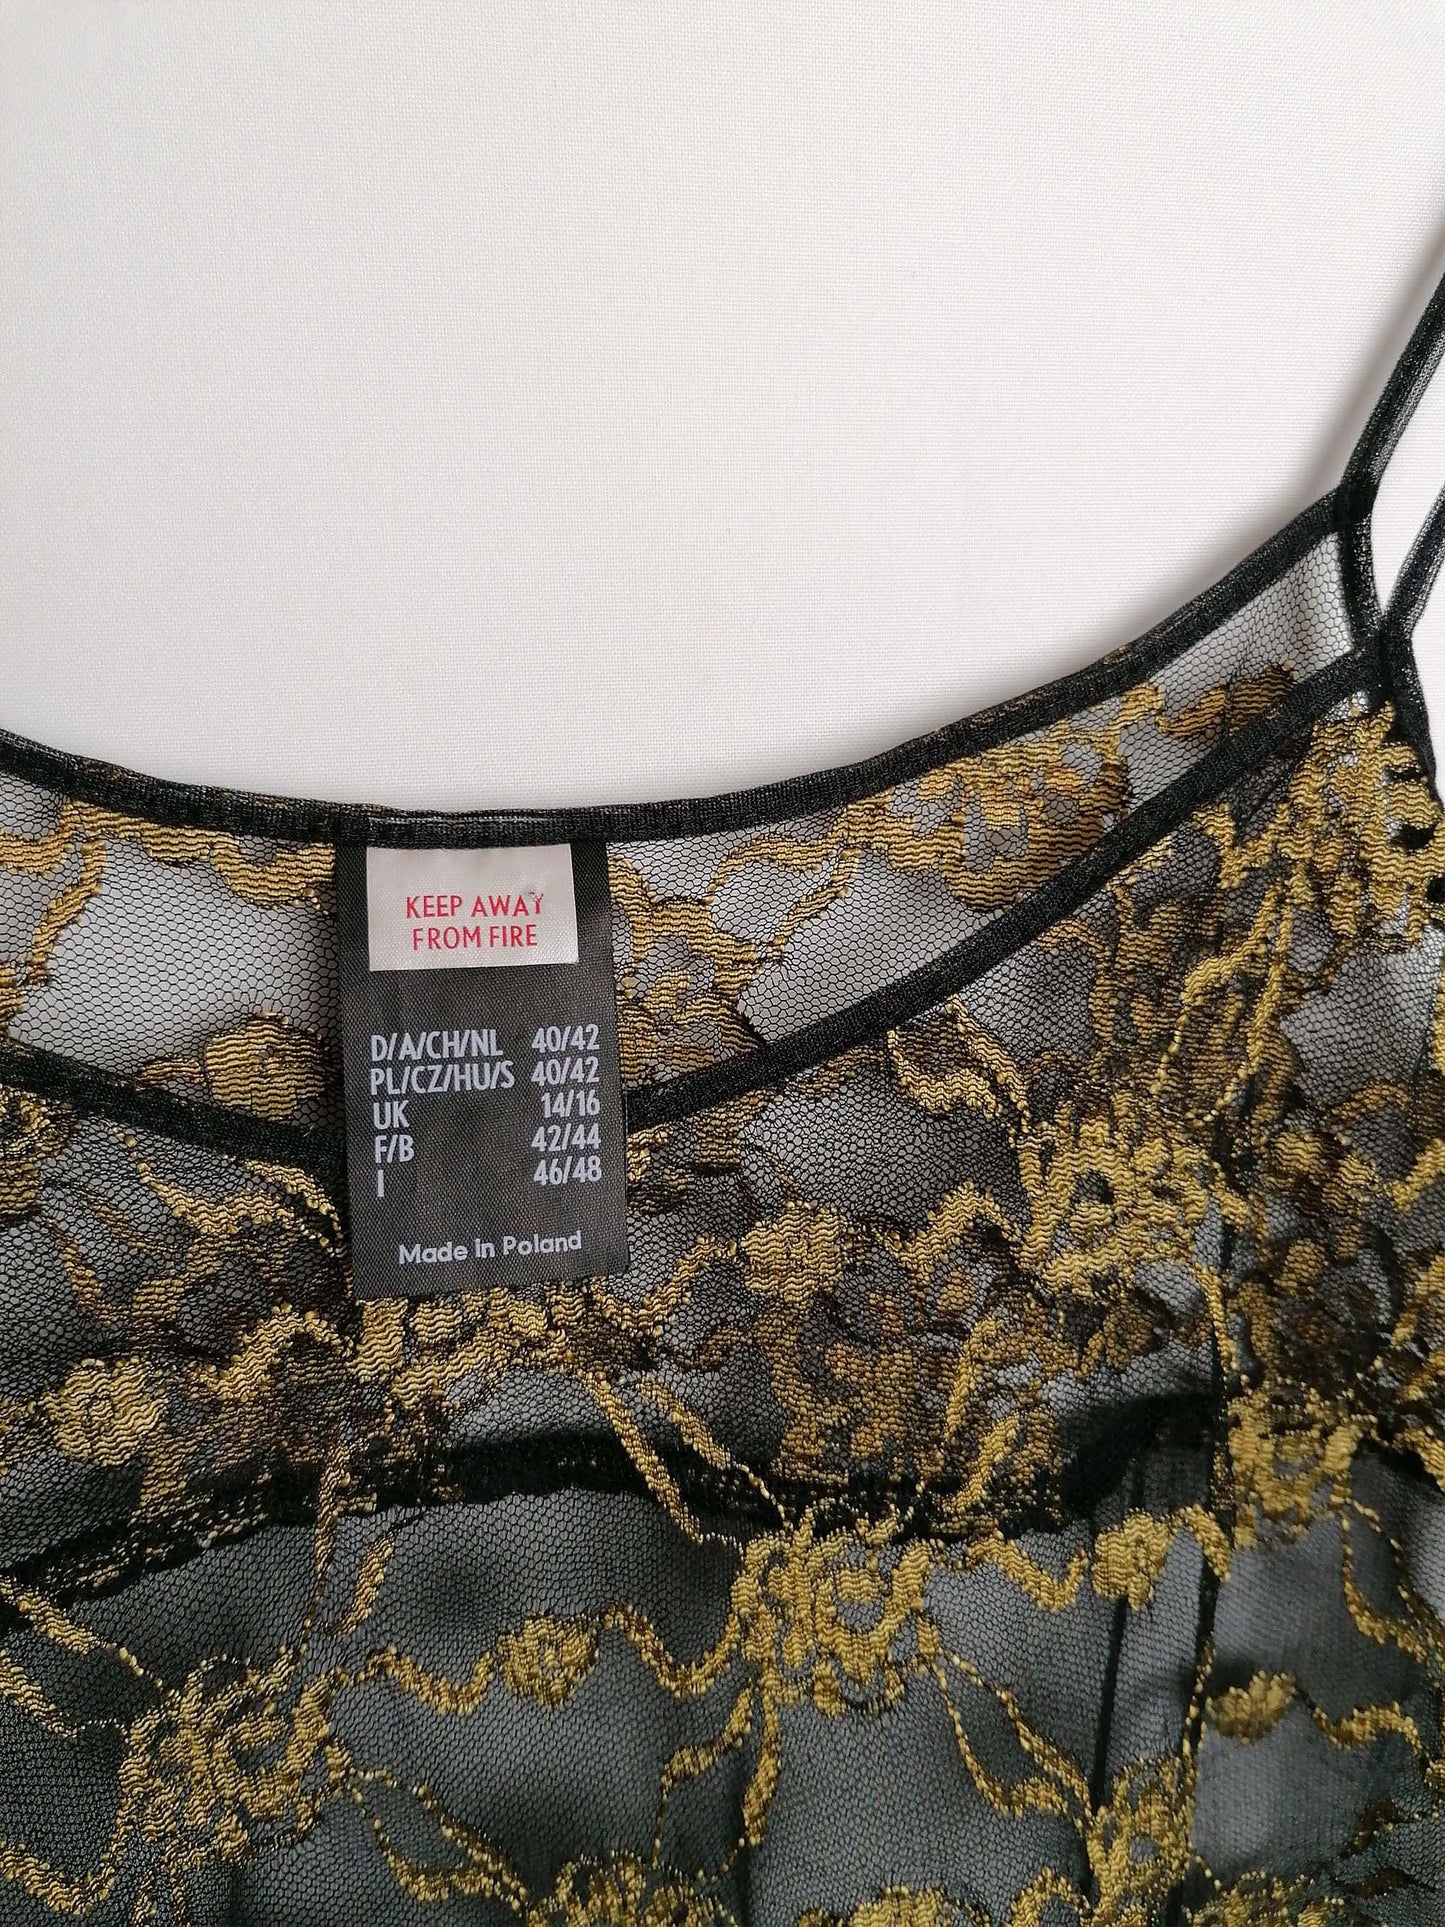 Black and Gold Sheer Tulle Lingerie Set - size M-L / UK 14